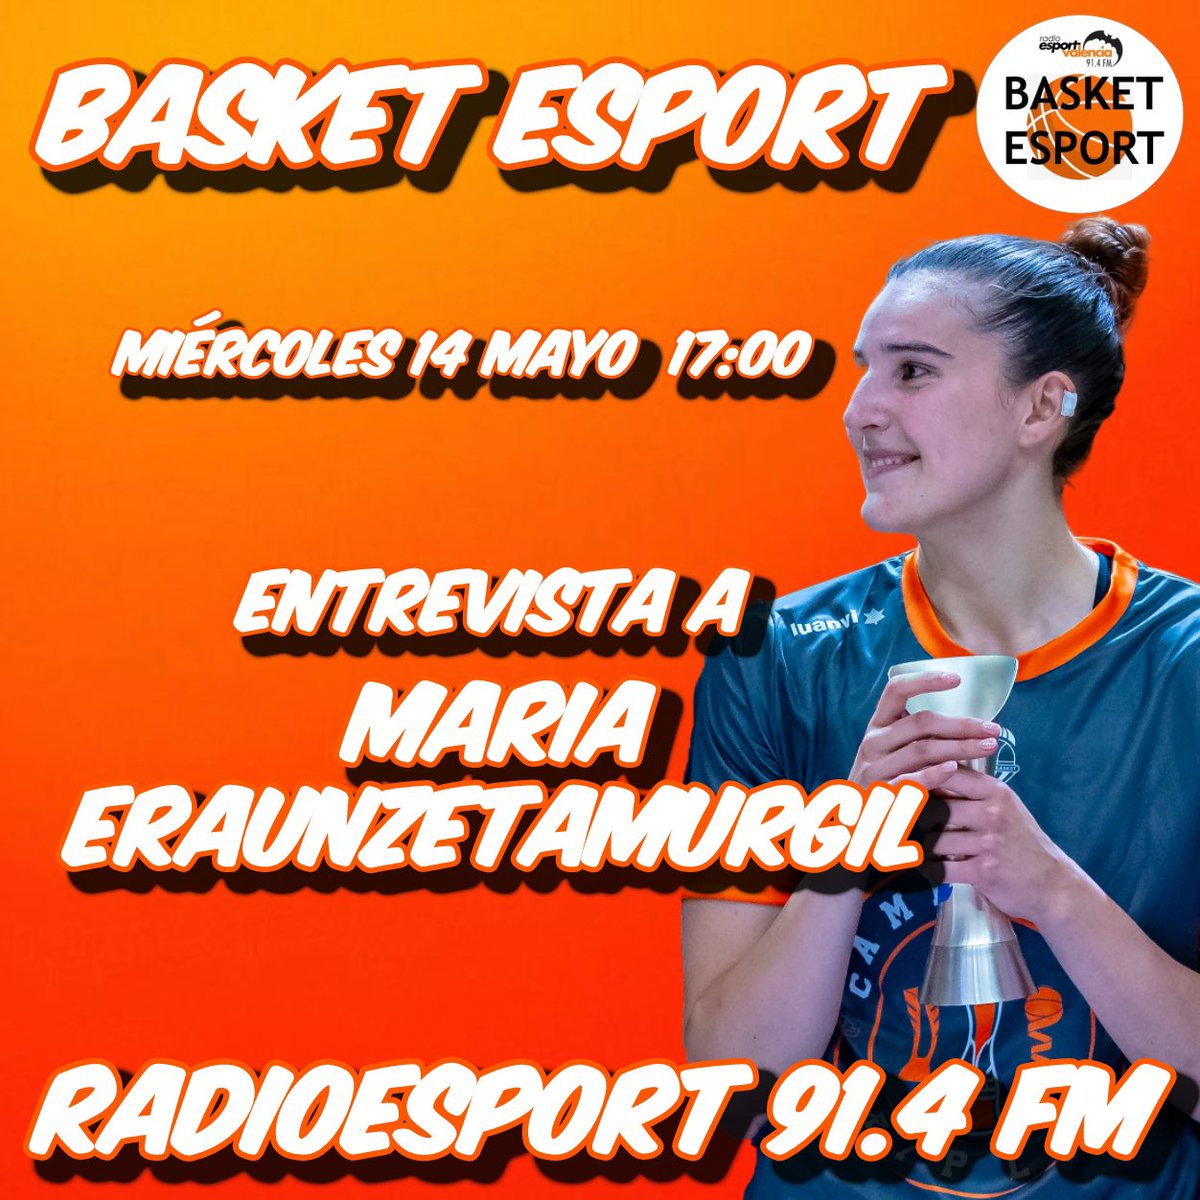 🚨PROGRAMA ESPECIAL🏀🍊

Esta miércoles tendremos en el estudio de #BasketEsport a una Campeona🏆 de #LFendesa y #CopaReinaLFEndesa con @valenciabasket como @mariaeraunzeta5

🤩Además nos trae algo muy muy chulo, ¡No os lo perdáis!🔝🔝

⌚️17:00

🎧91.4FM y radioesport914.com